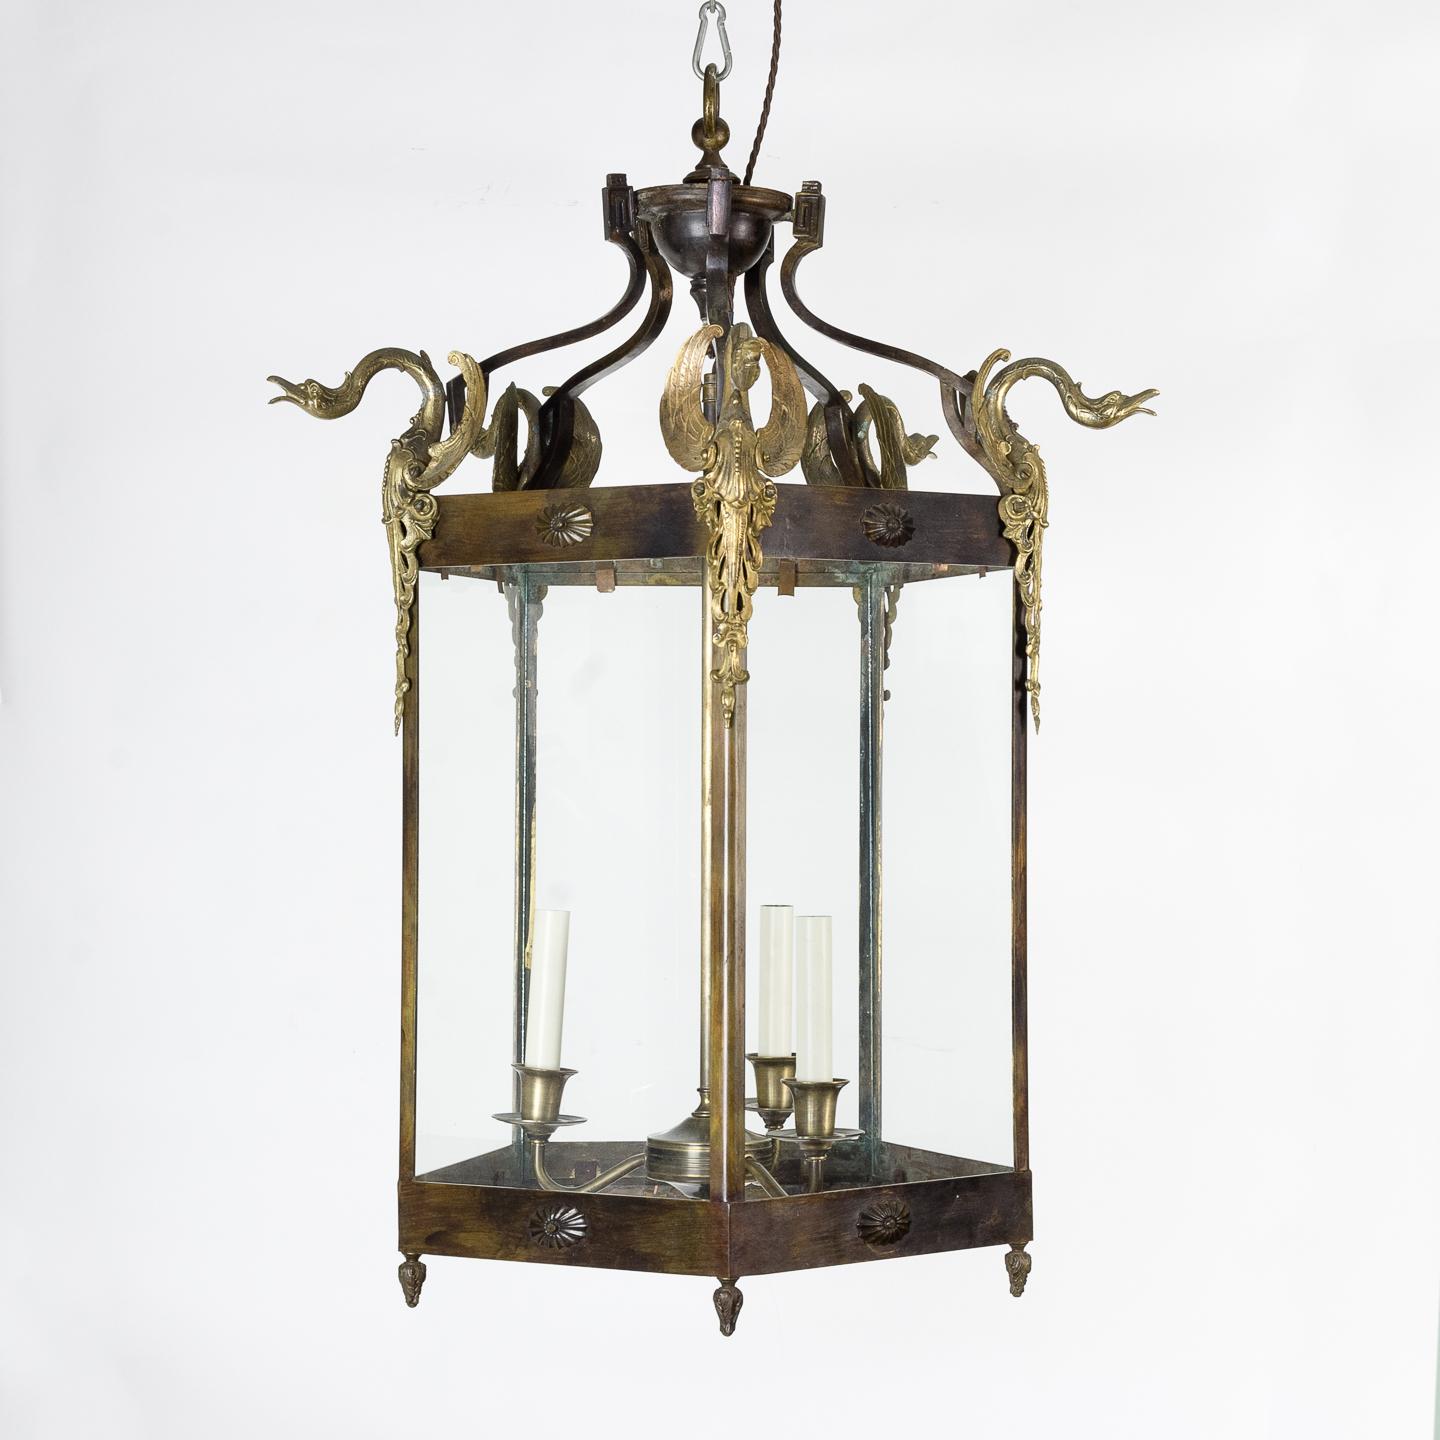 lanterne d'entrée de style Empire français du 19ème siècle, de forme pentagonale avec des montures de cygnes dorés à chaque sommet et une suspension à trois lumières à l'intérieur.